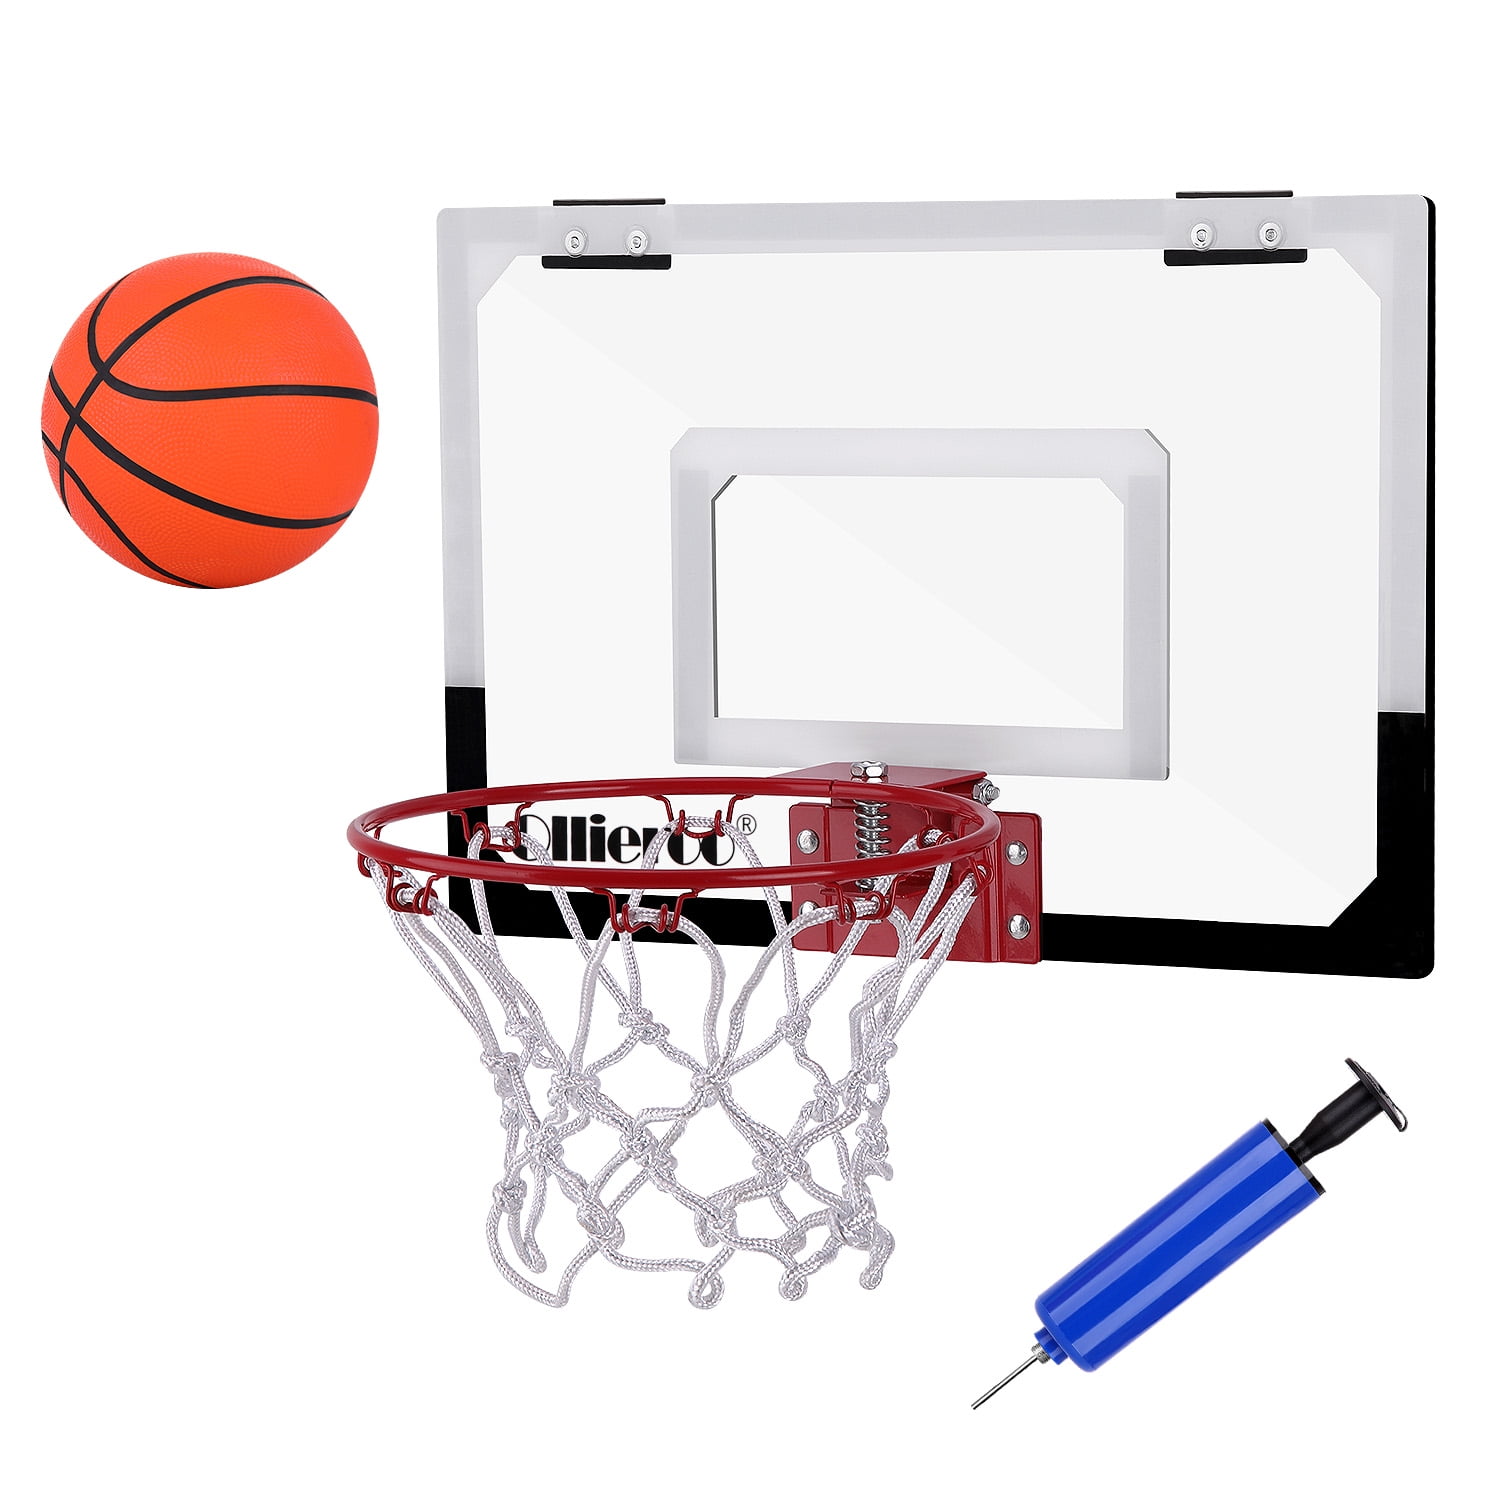 Over The Door Pro Mini Basketball Hoop pour enfants adultes adolescents,  pour porte et mur avec accessoires de basket-ball complets (18x12 pouces)